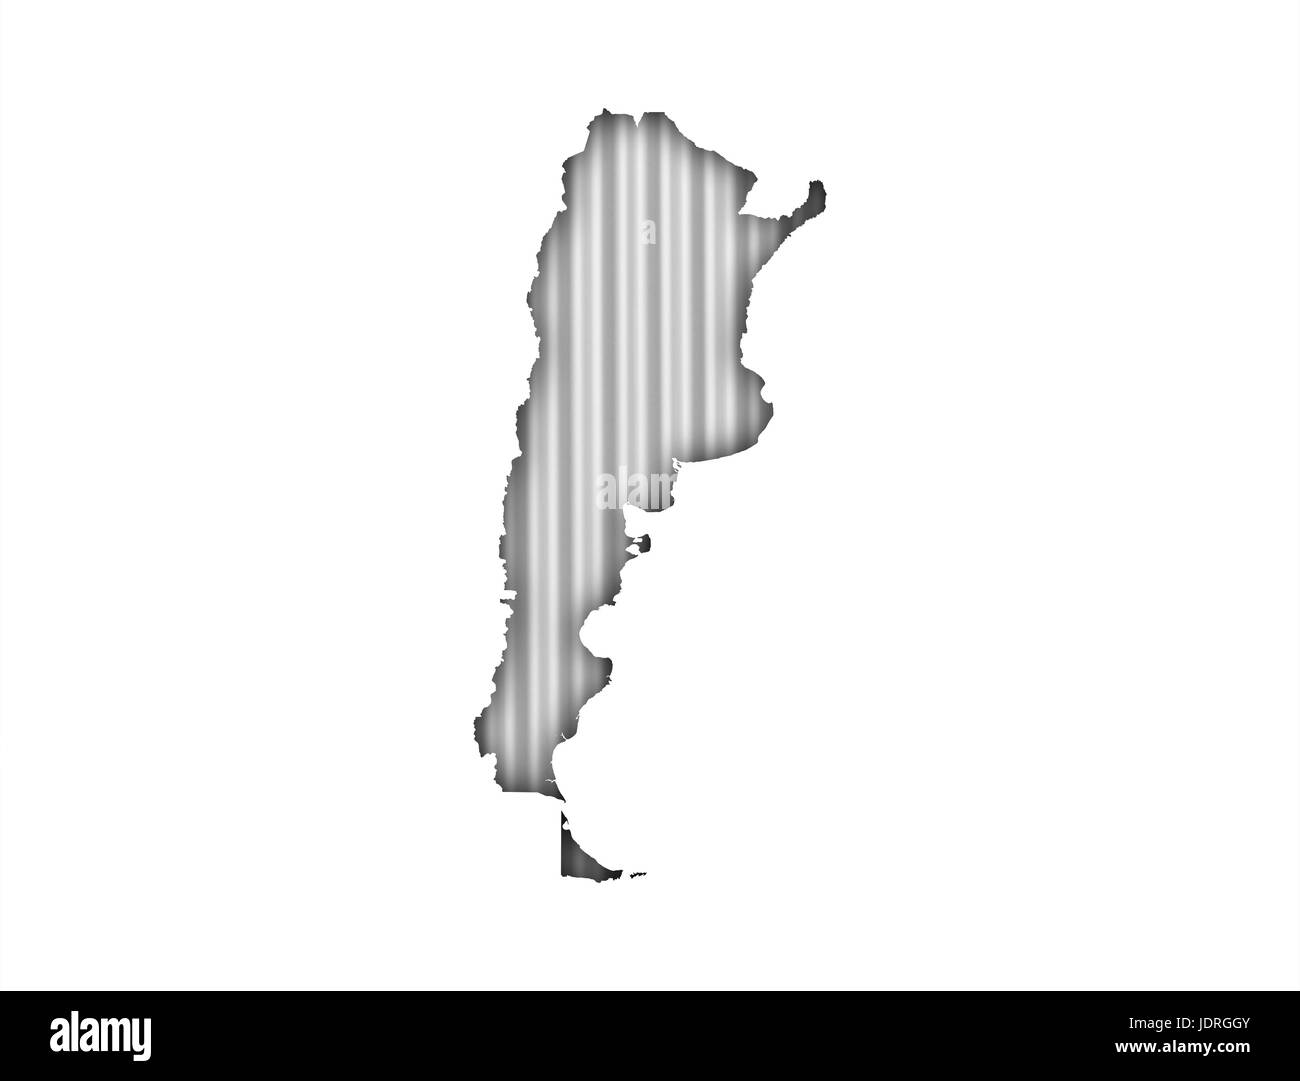 Map of Argentina on corrugated iron Stock Photo